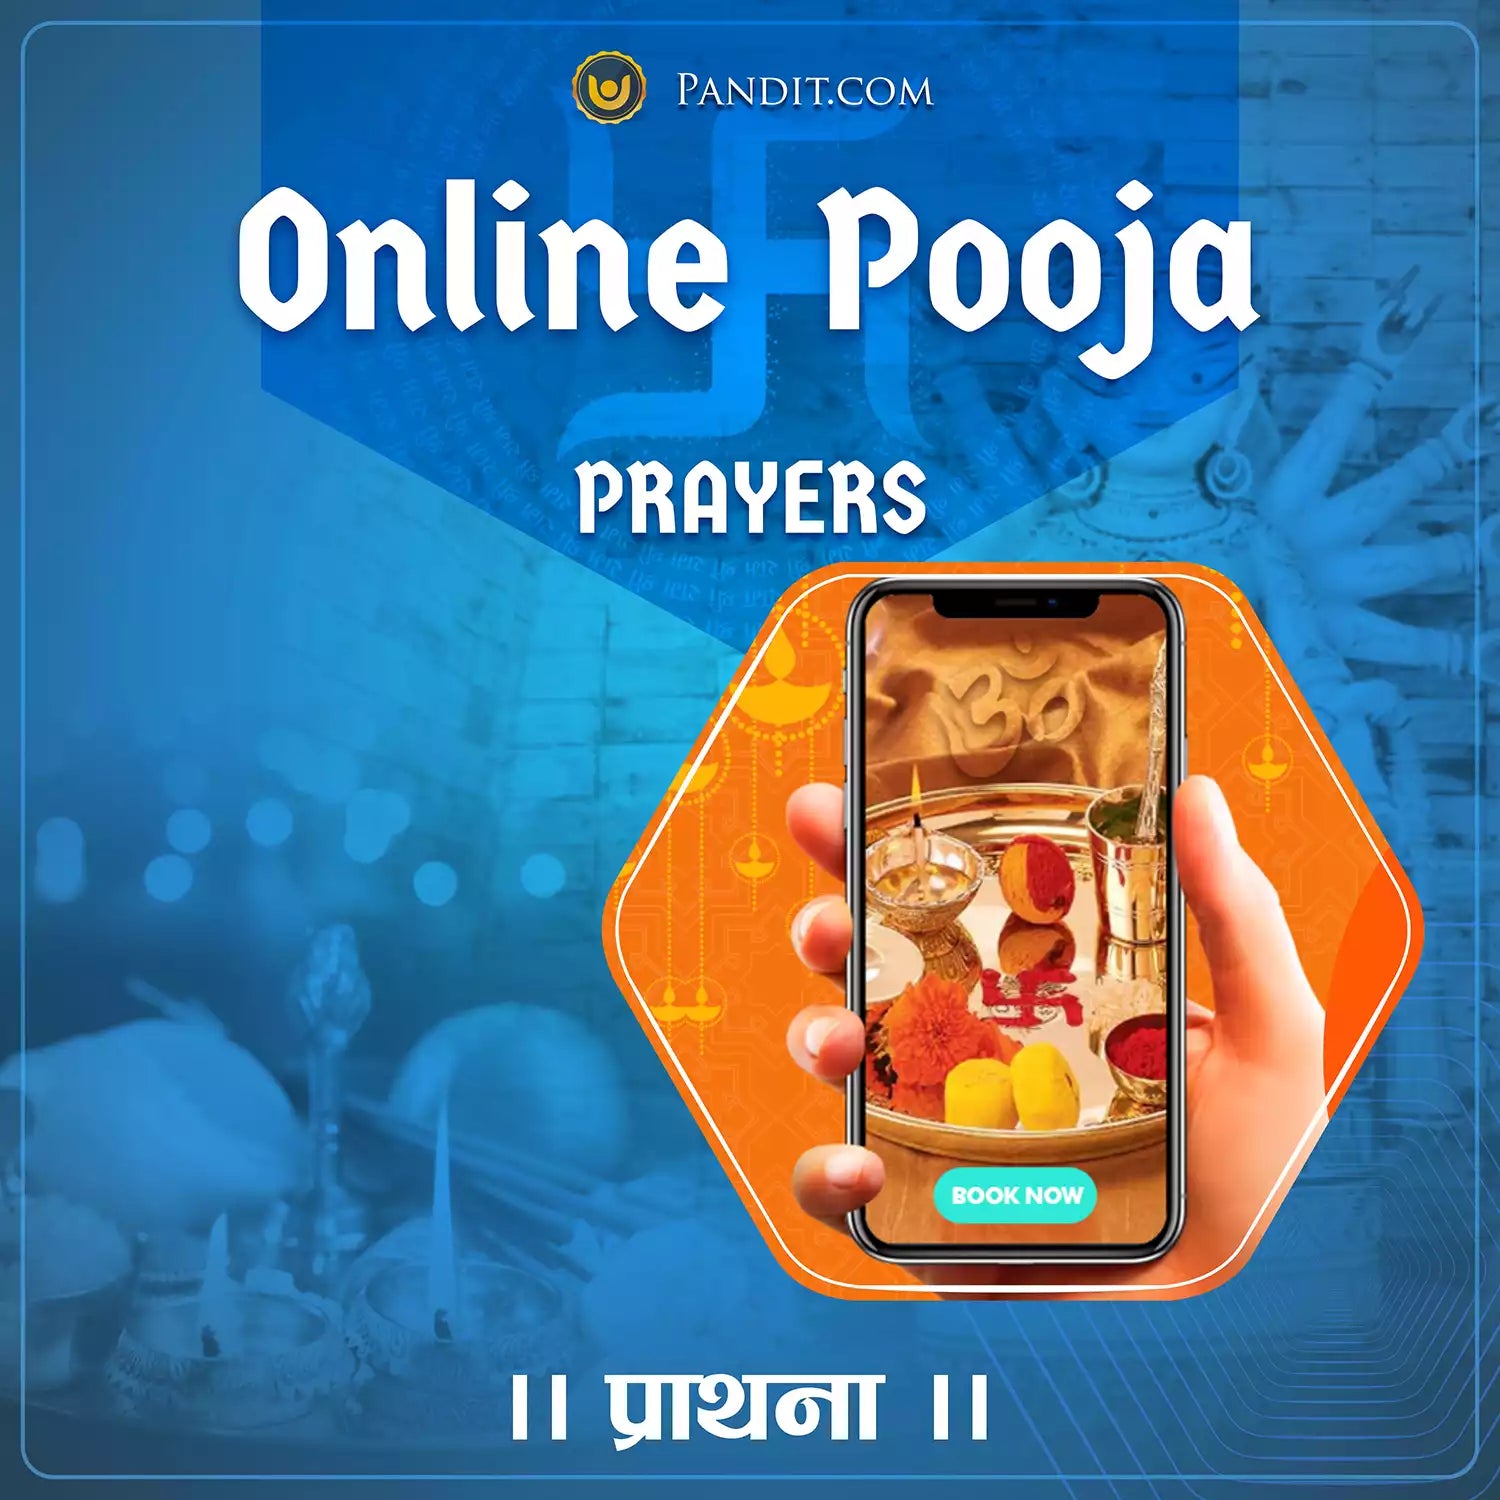 Online Pooja